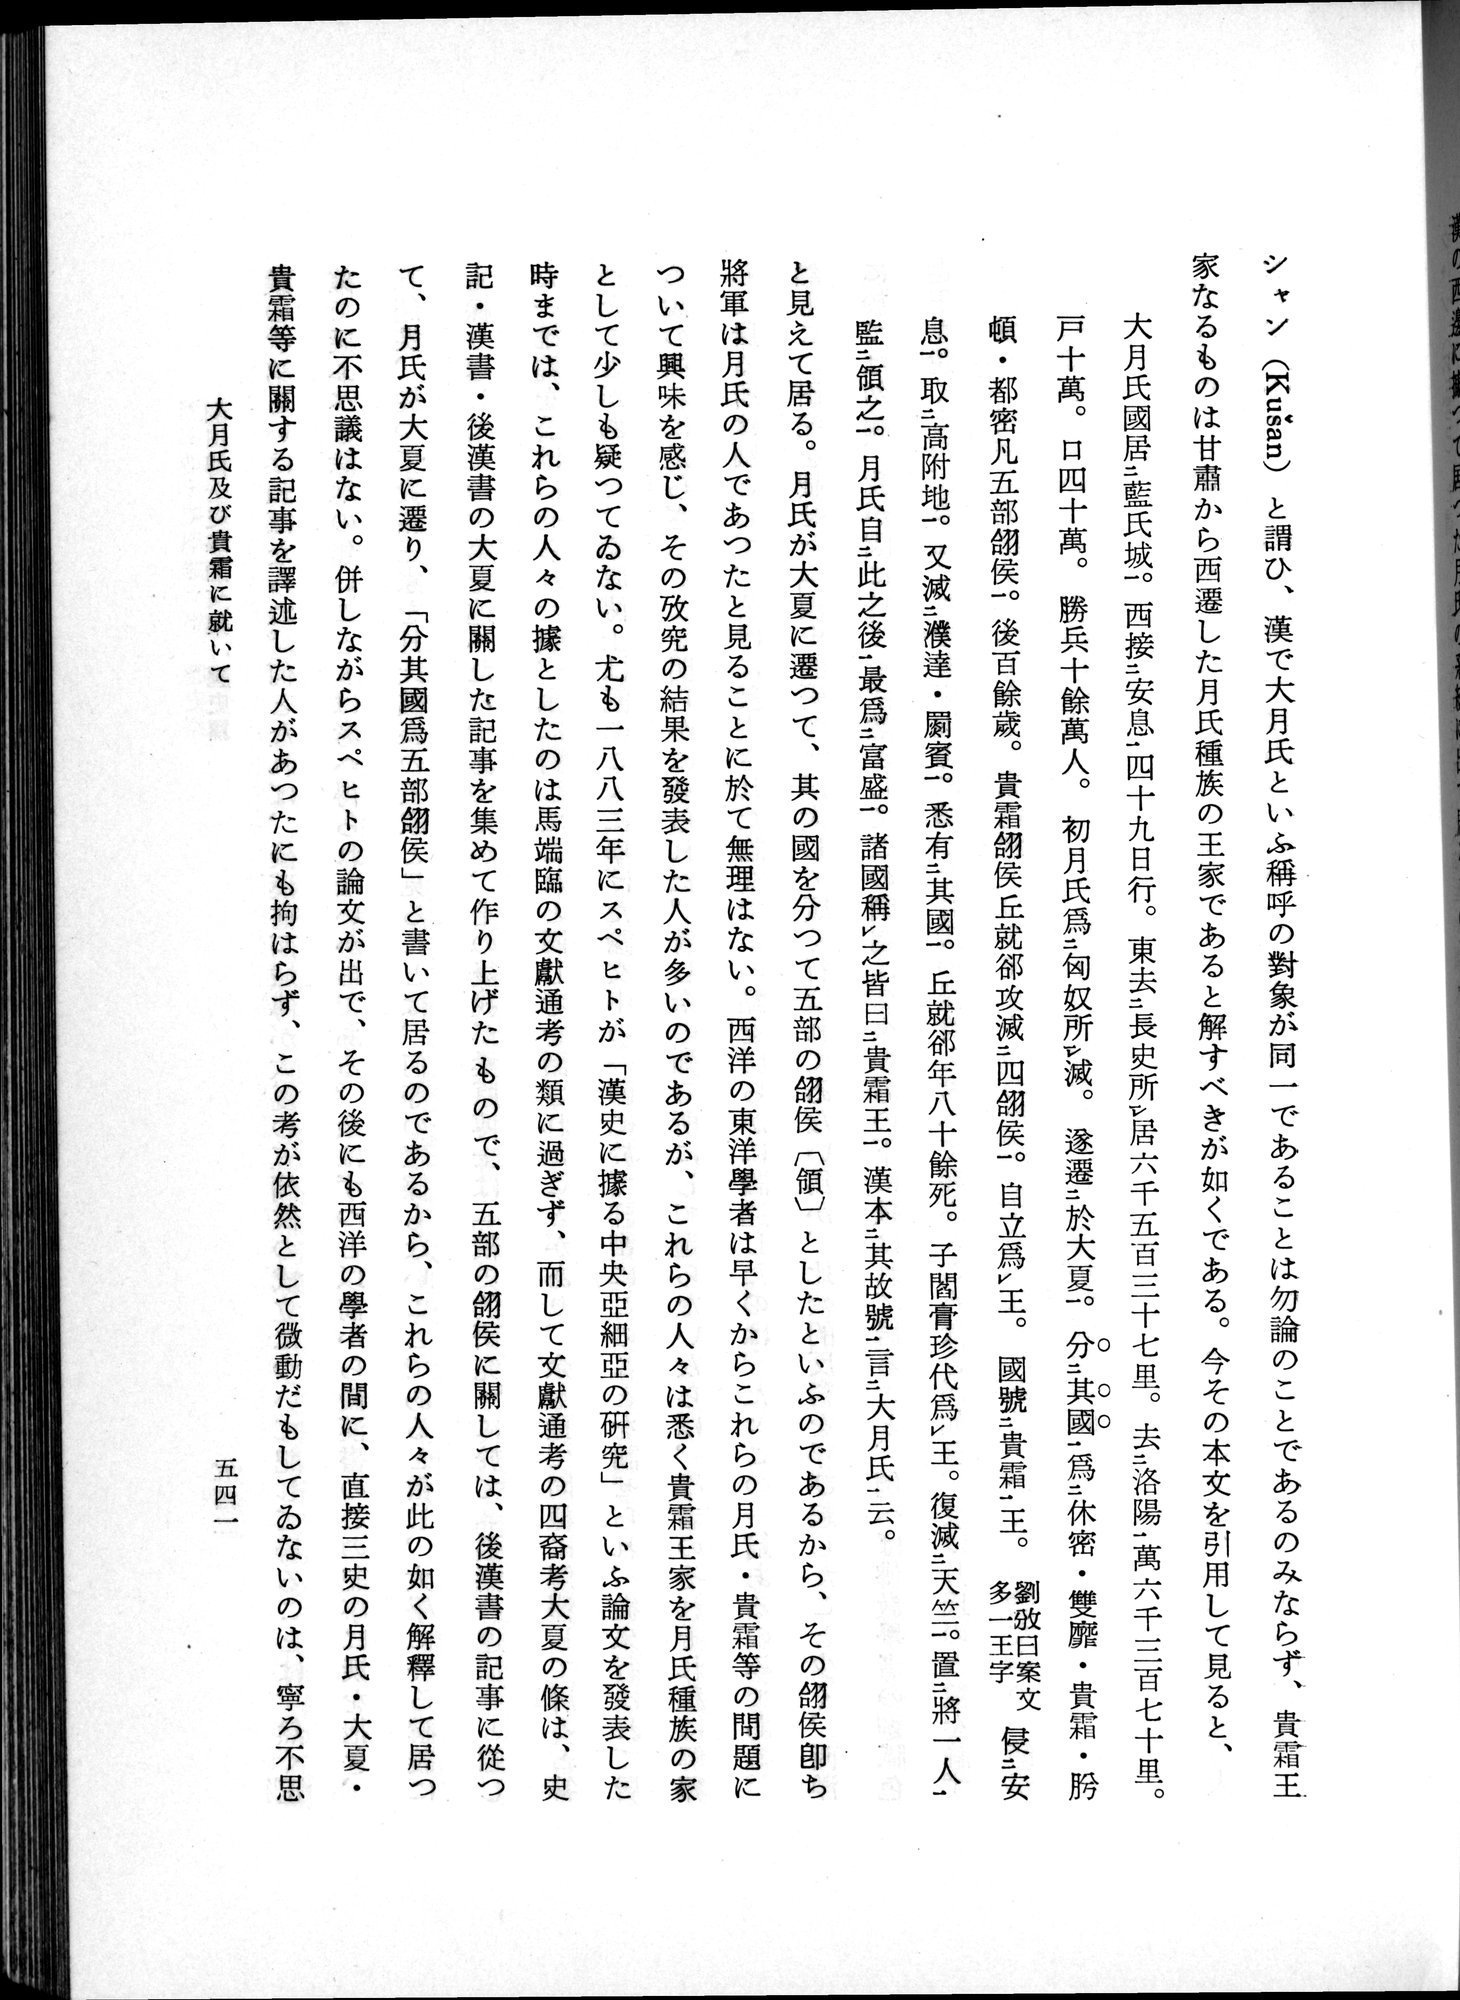 羽田博士史学論文集 : vol.1 / Page 579 (Grayscale High Resolution Image)